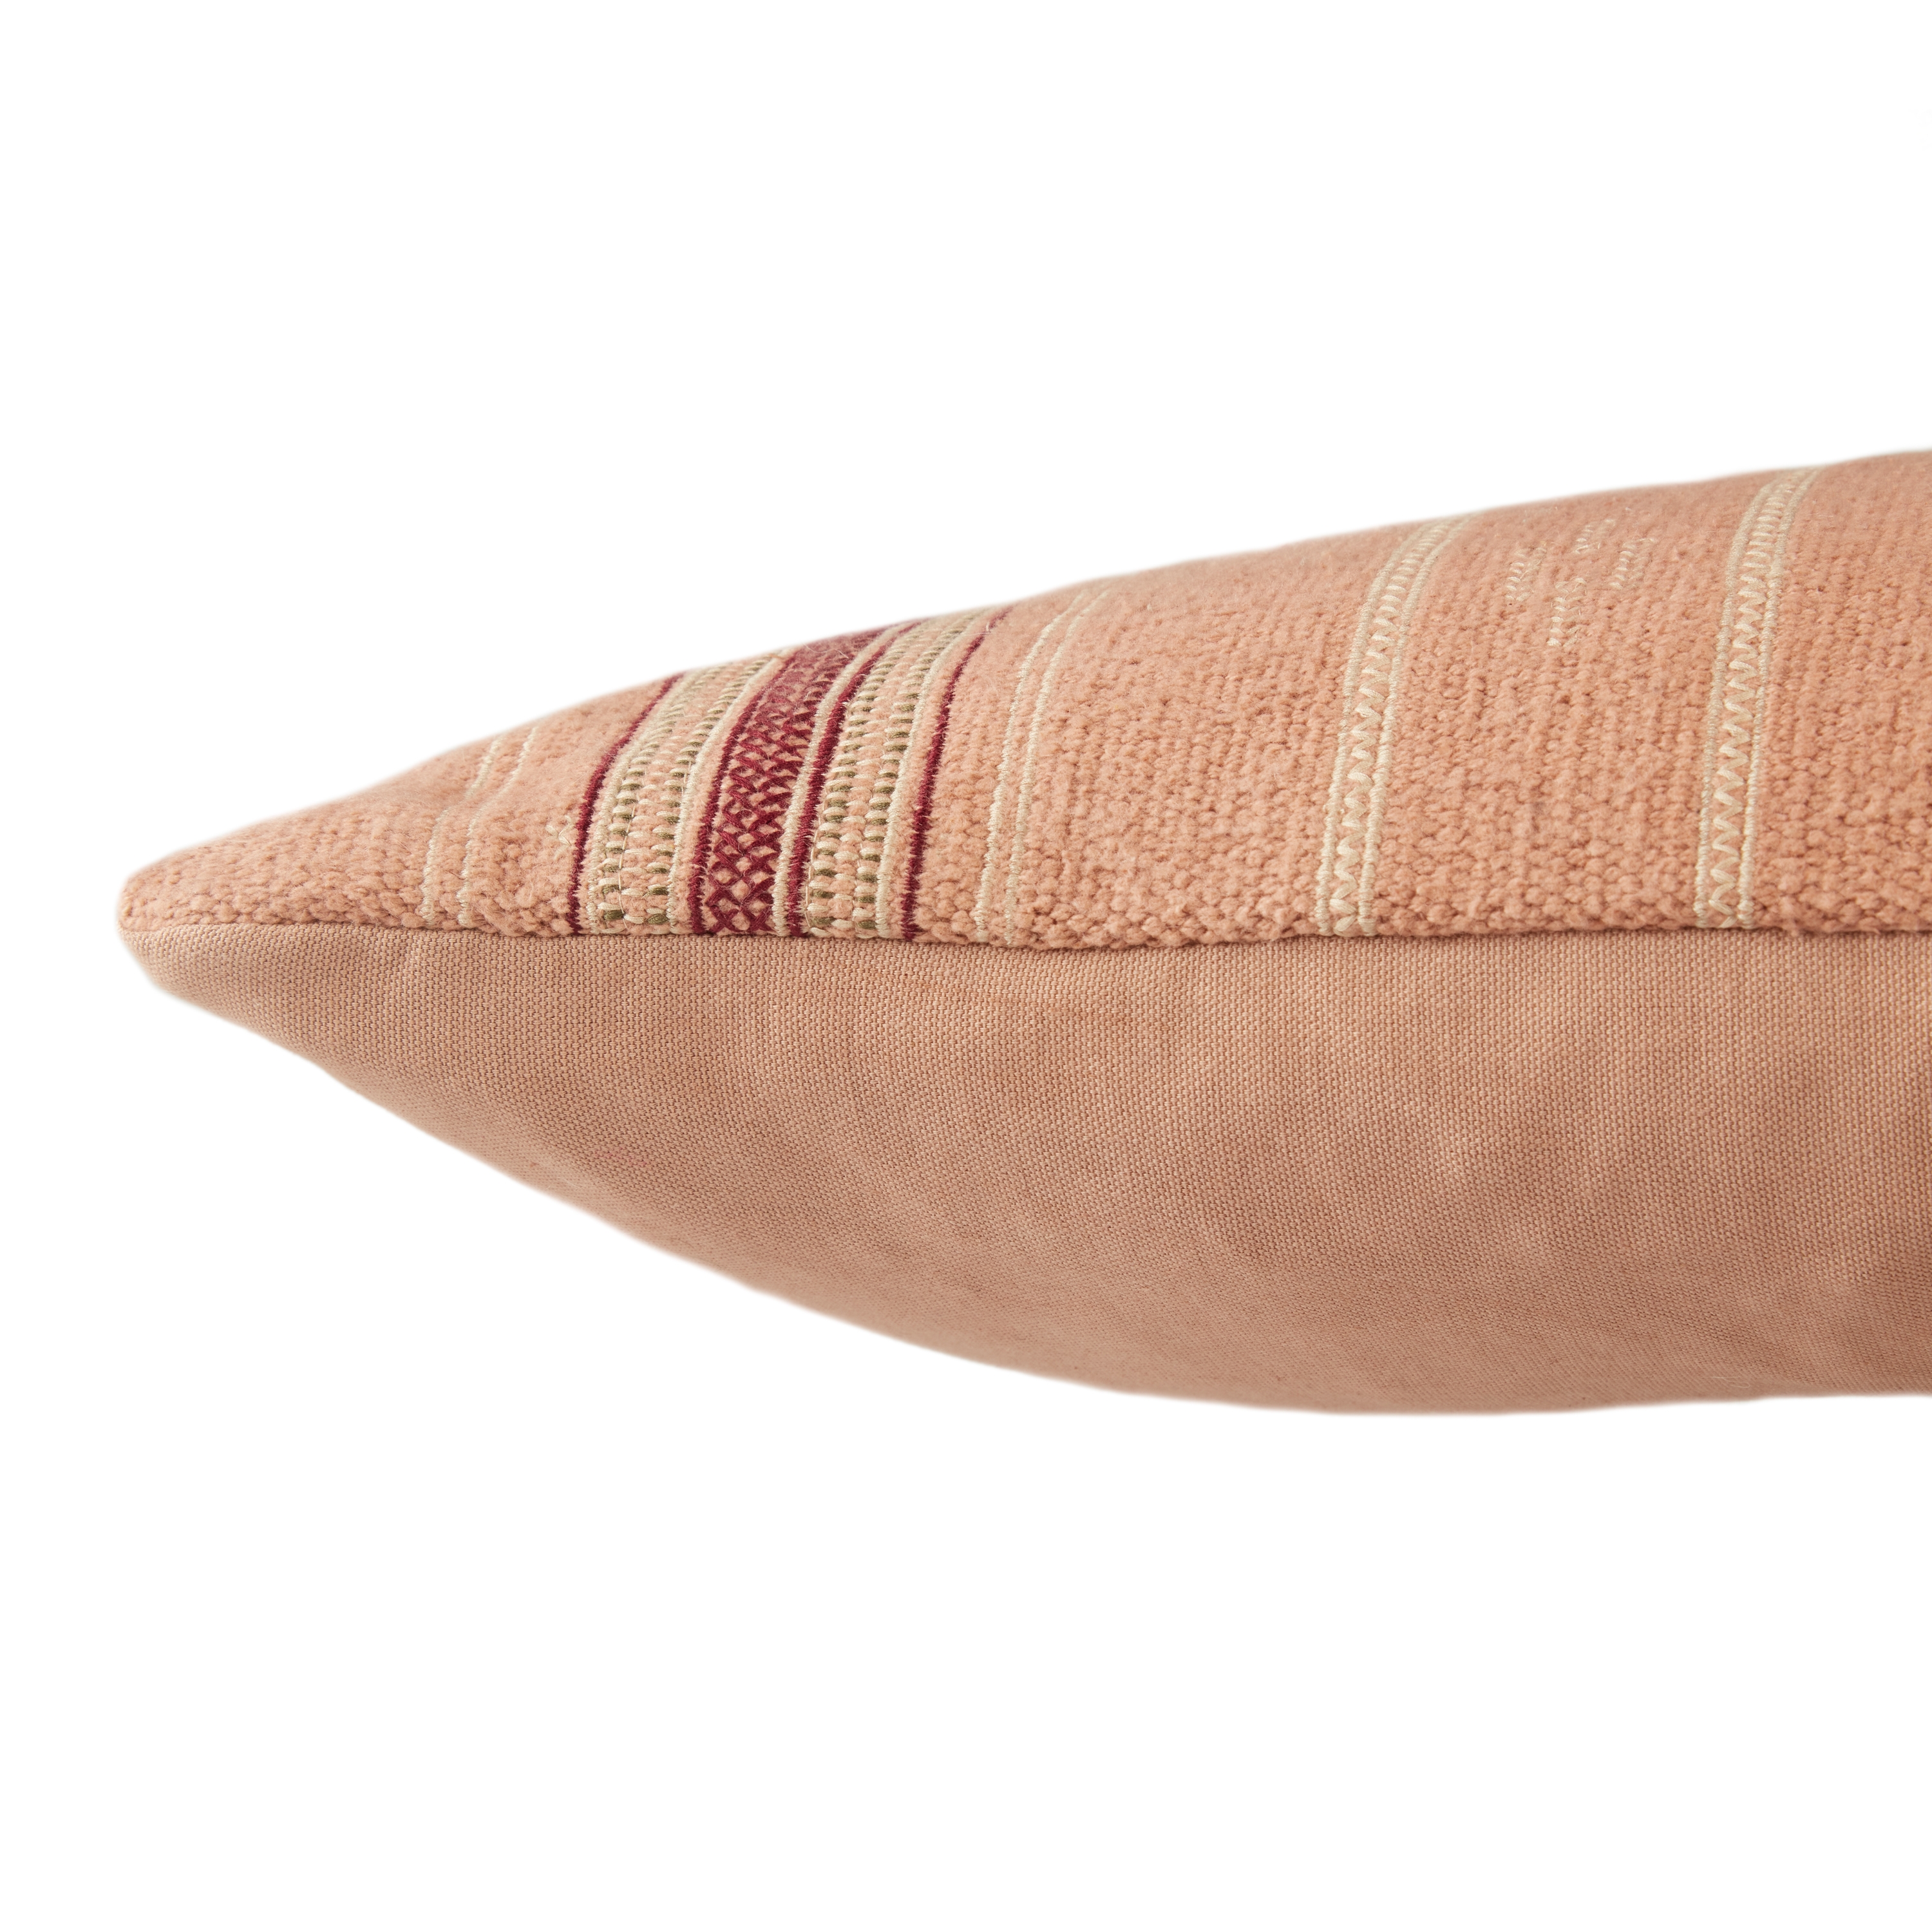 Amezri Extra Long Lumbar Pillow, Blush, 48" x 13" - Image 2